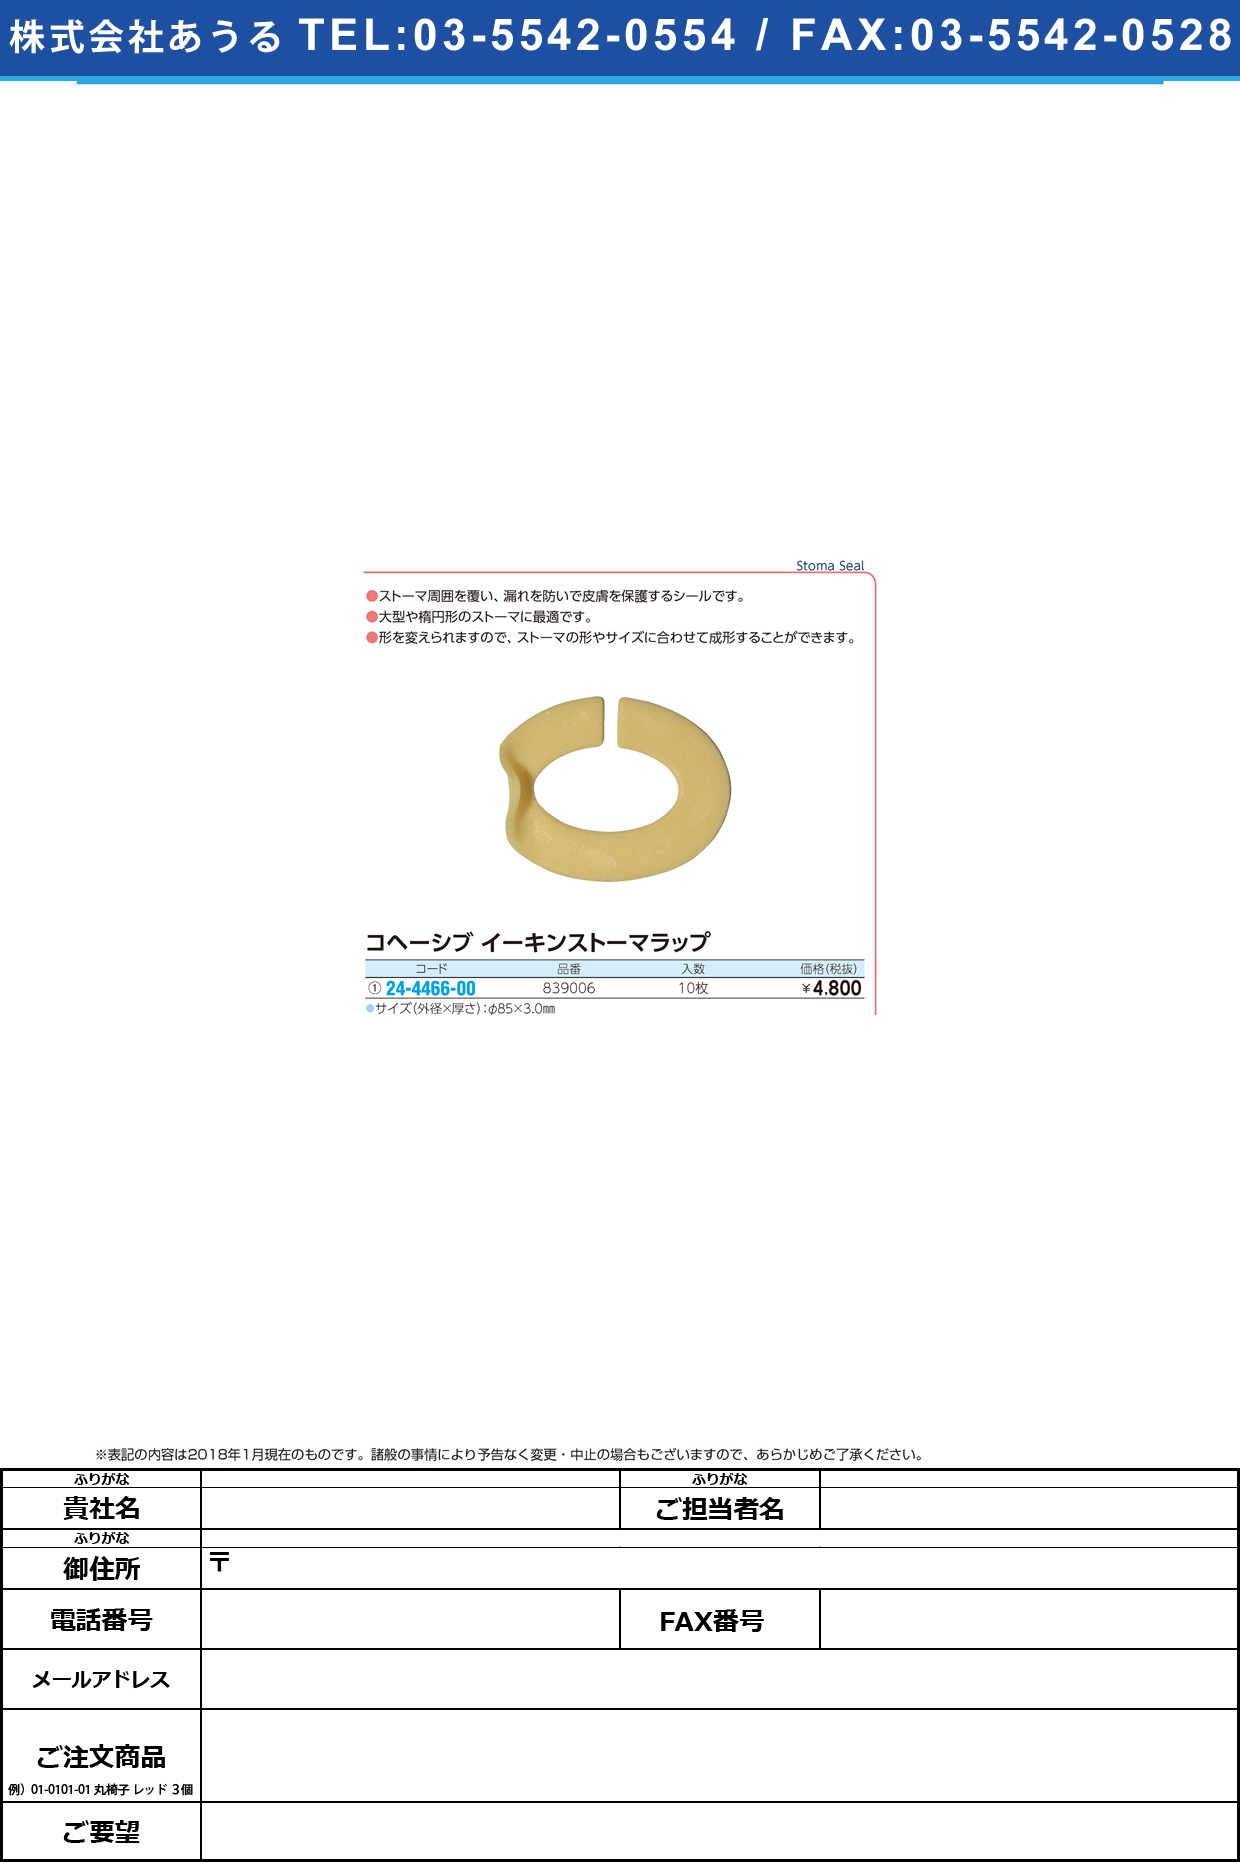 (24-4466-00)イーキンストーマラップ 839006(10ﾏｲ) ｲｰｷﾝｽﾄｰﾏﾗｯﾌﾟ【1箱単位】【2018年カタログ商品】